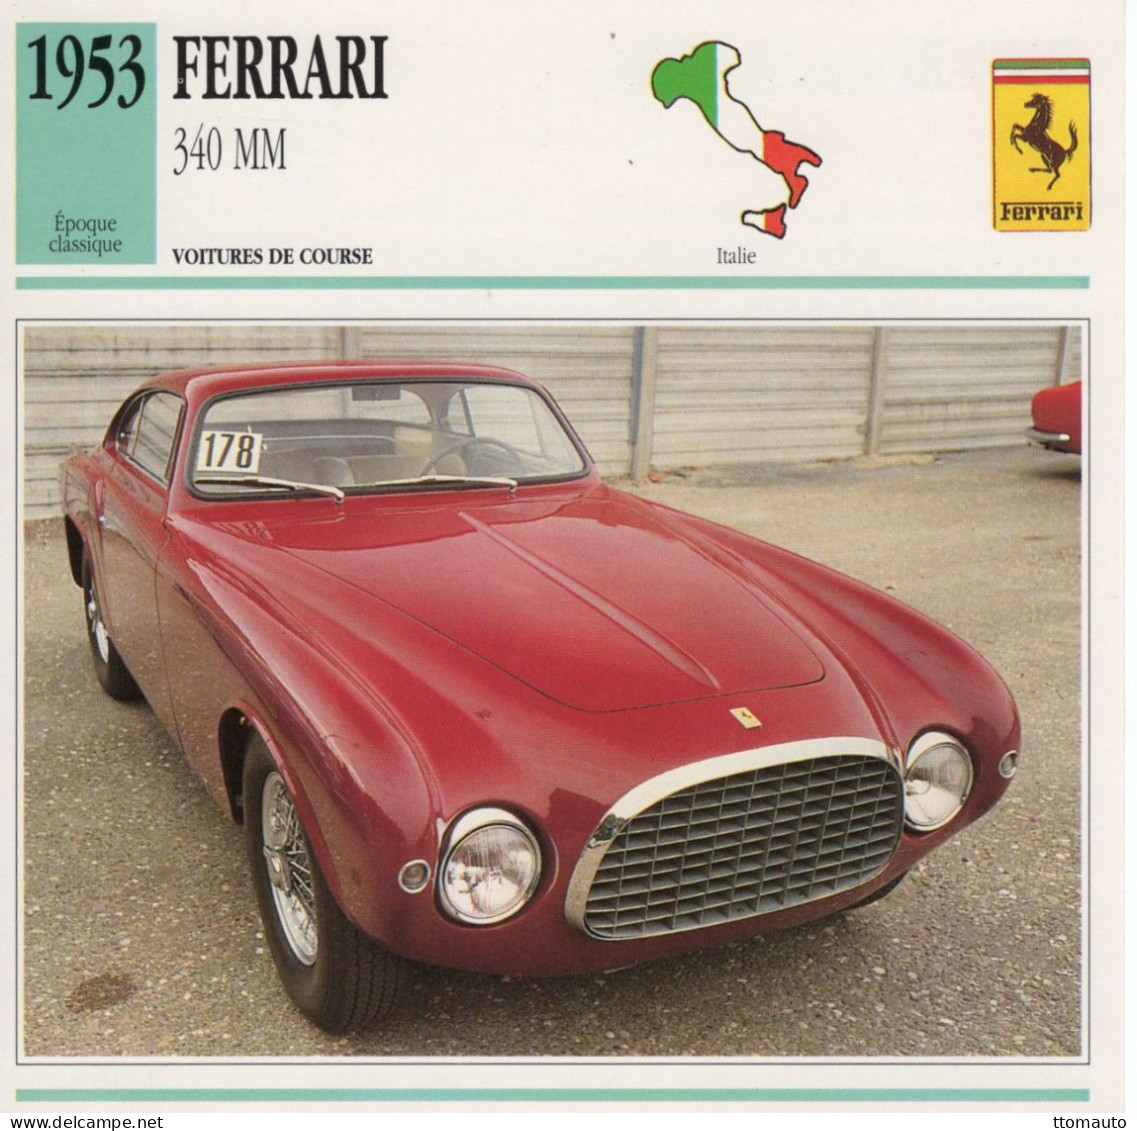 Ferrari 340 MM -  1953 - Voiture De Course -  Fiche Technique Automobile (I) - Cars